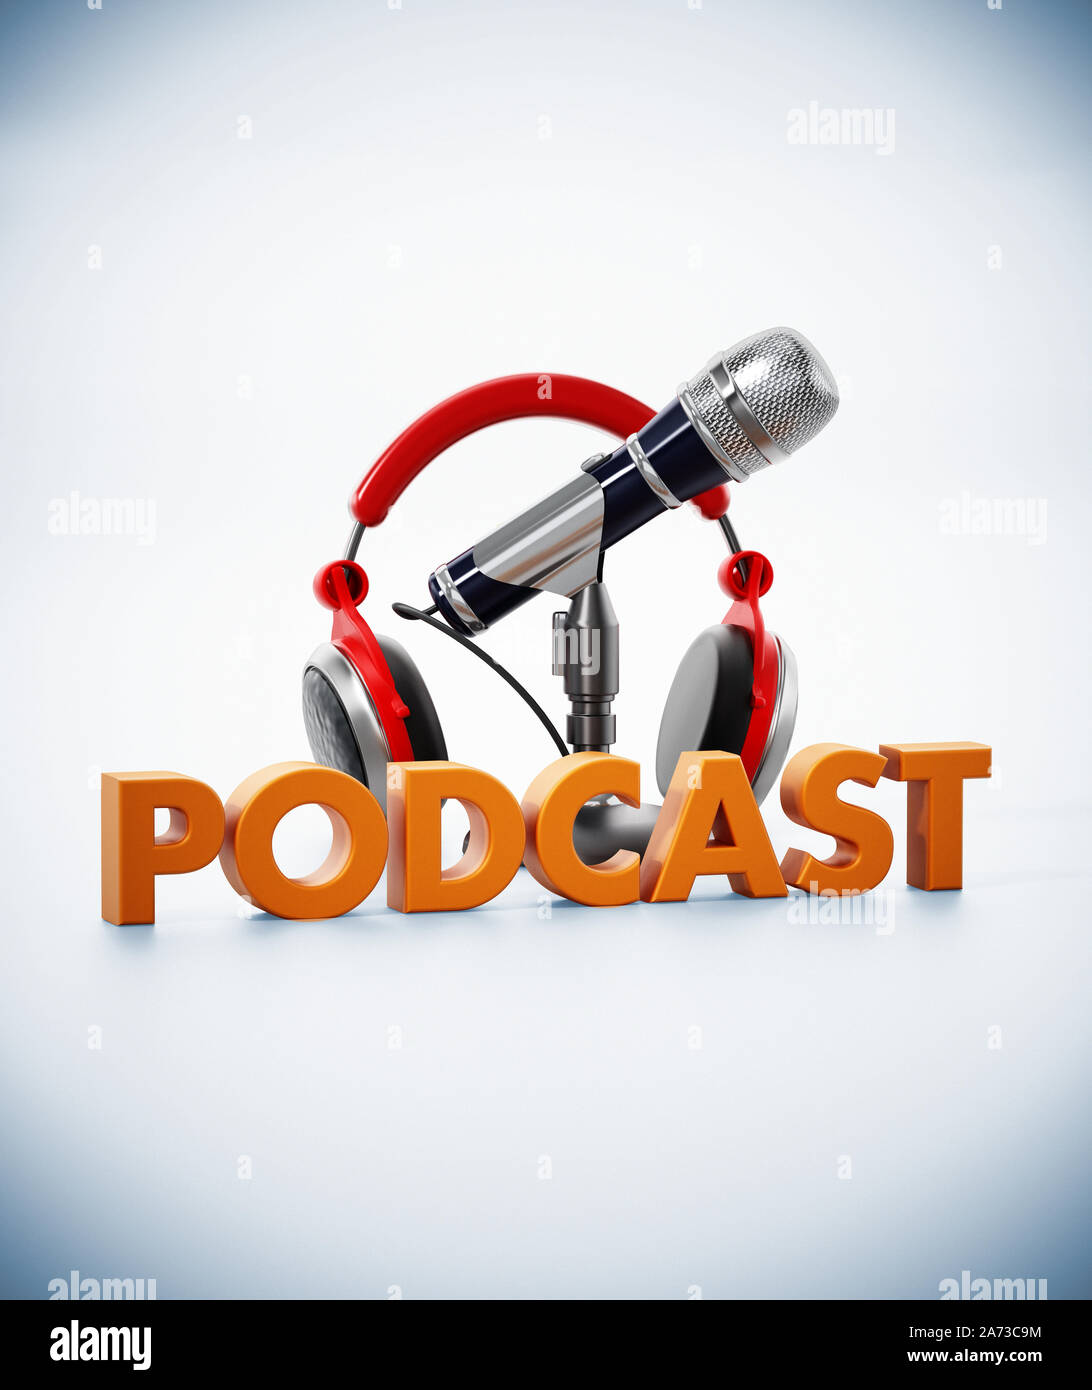 Podcast Wort, Mikrofon und Kopfhörer auf weiße Oberfläche. 3D-Darstellung. Stockfoto